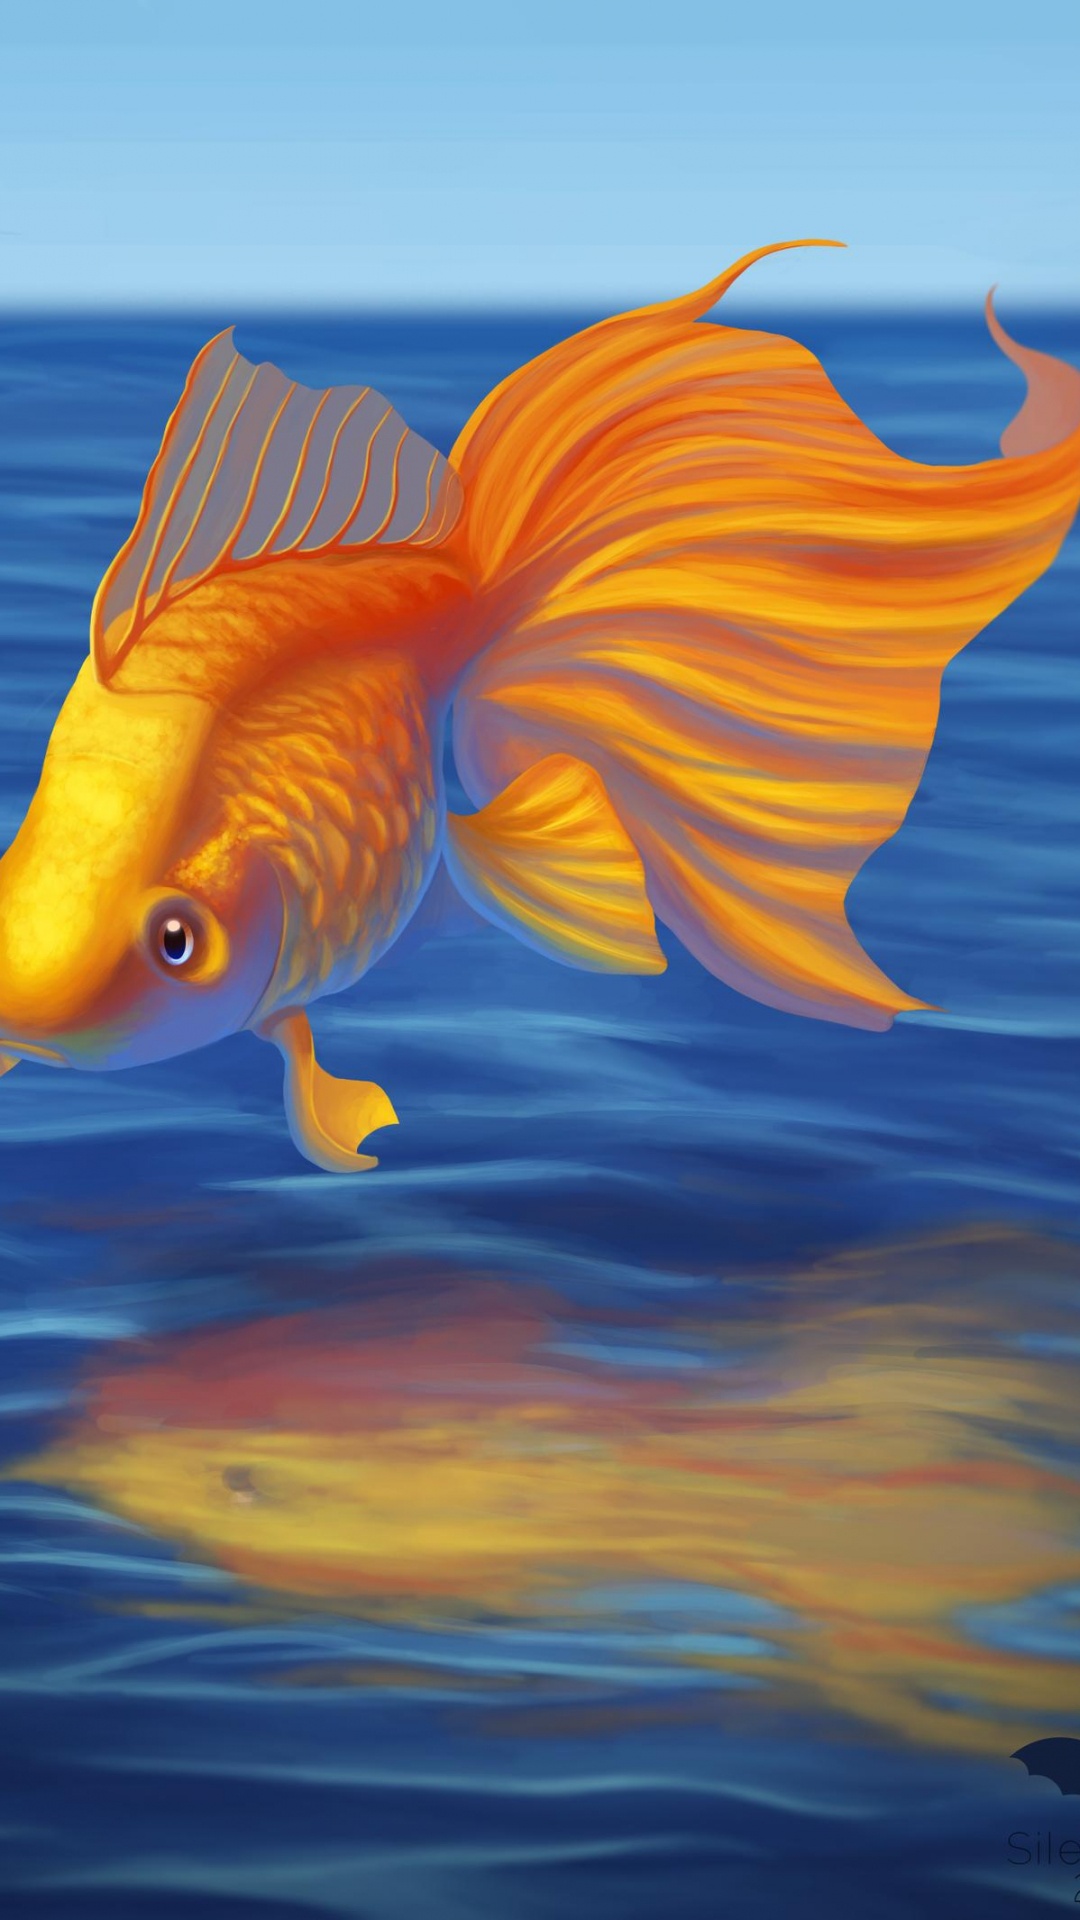 Pescado Blanco y Naranja en el Agua. Wallpaper in 1080x1920 Resolution